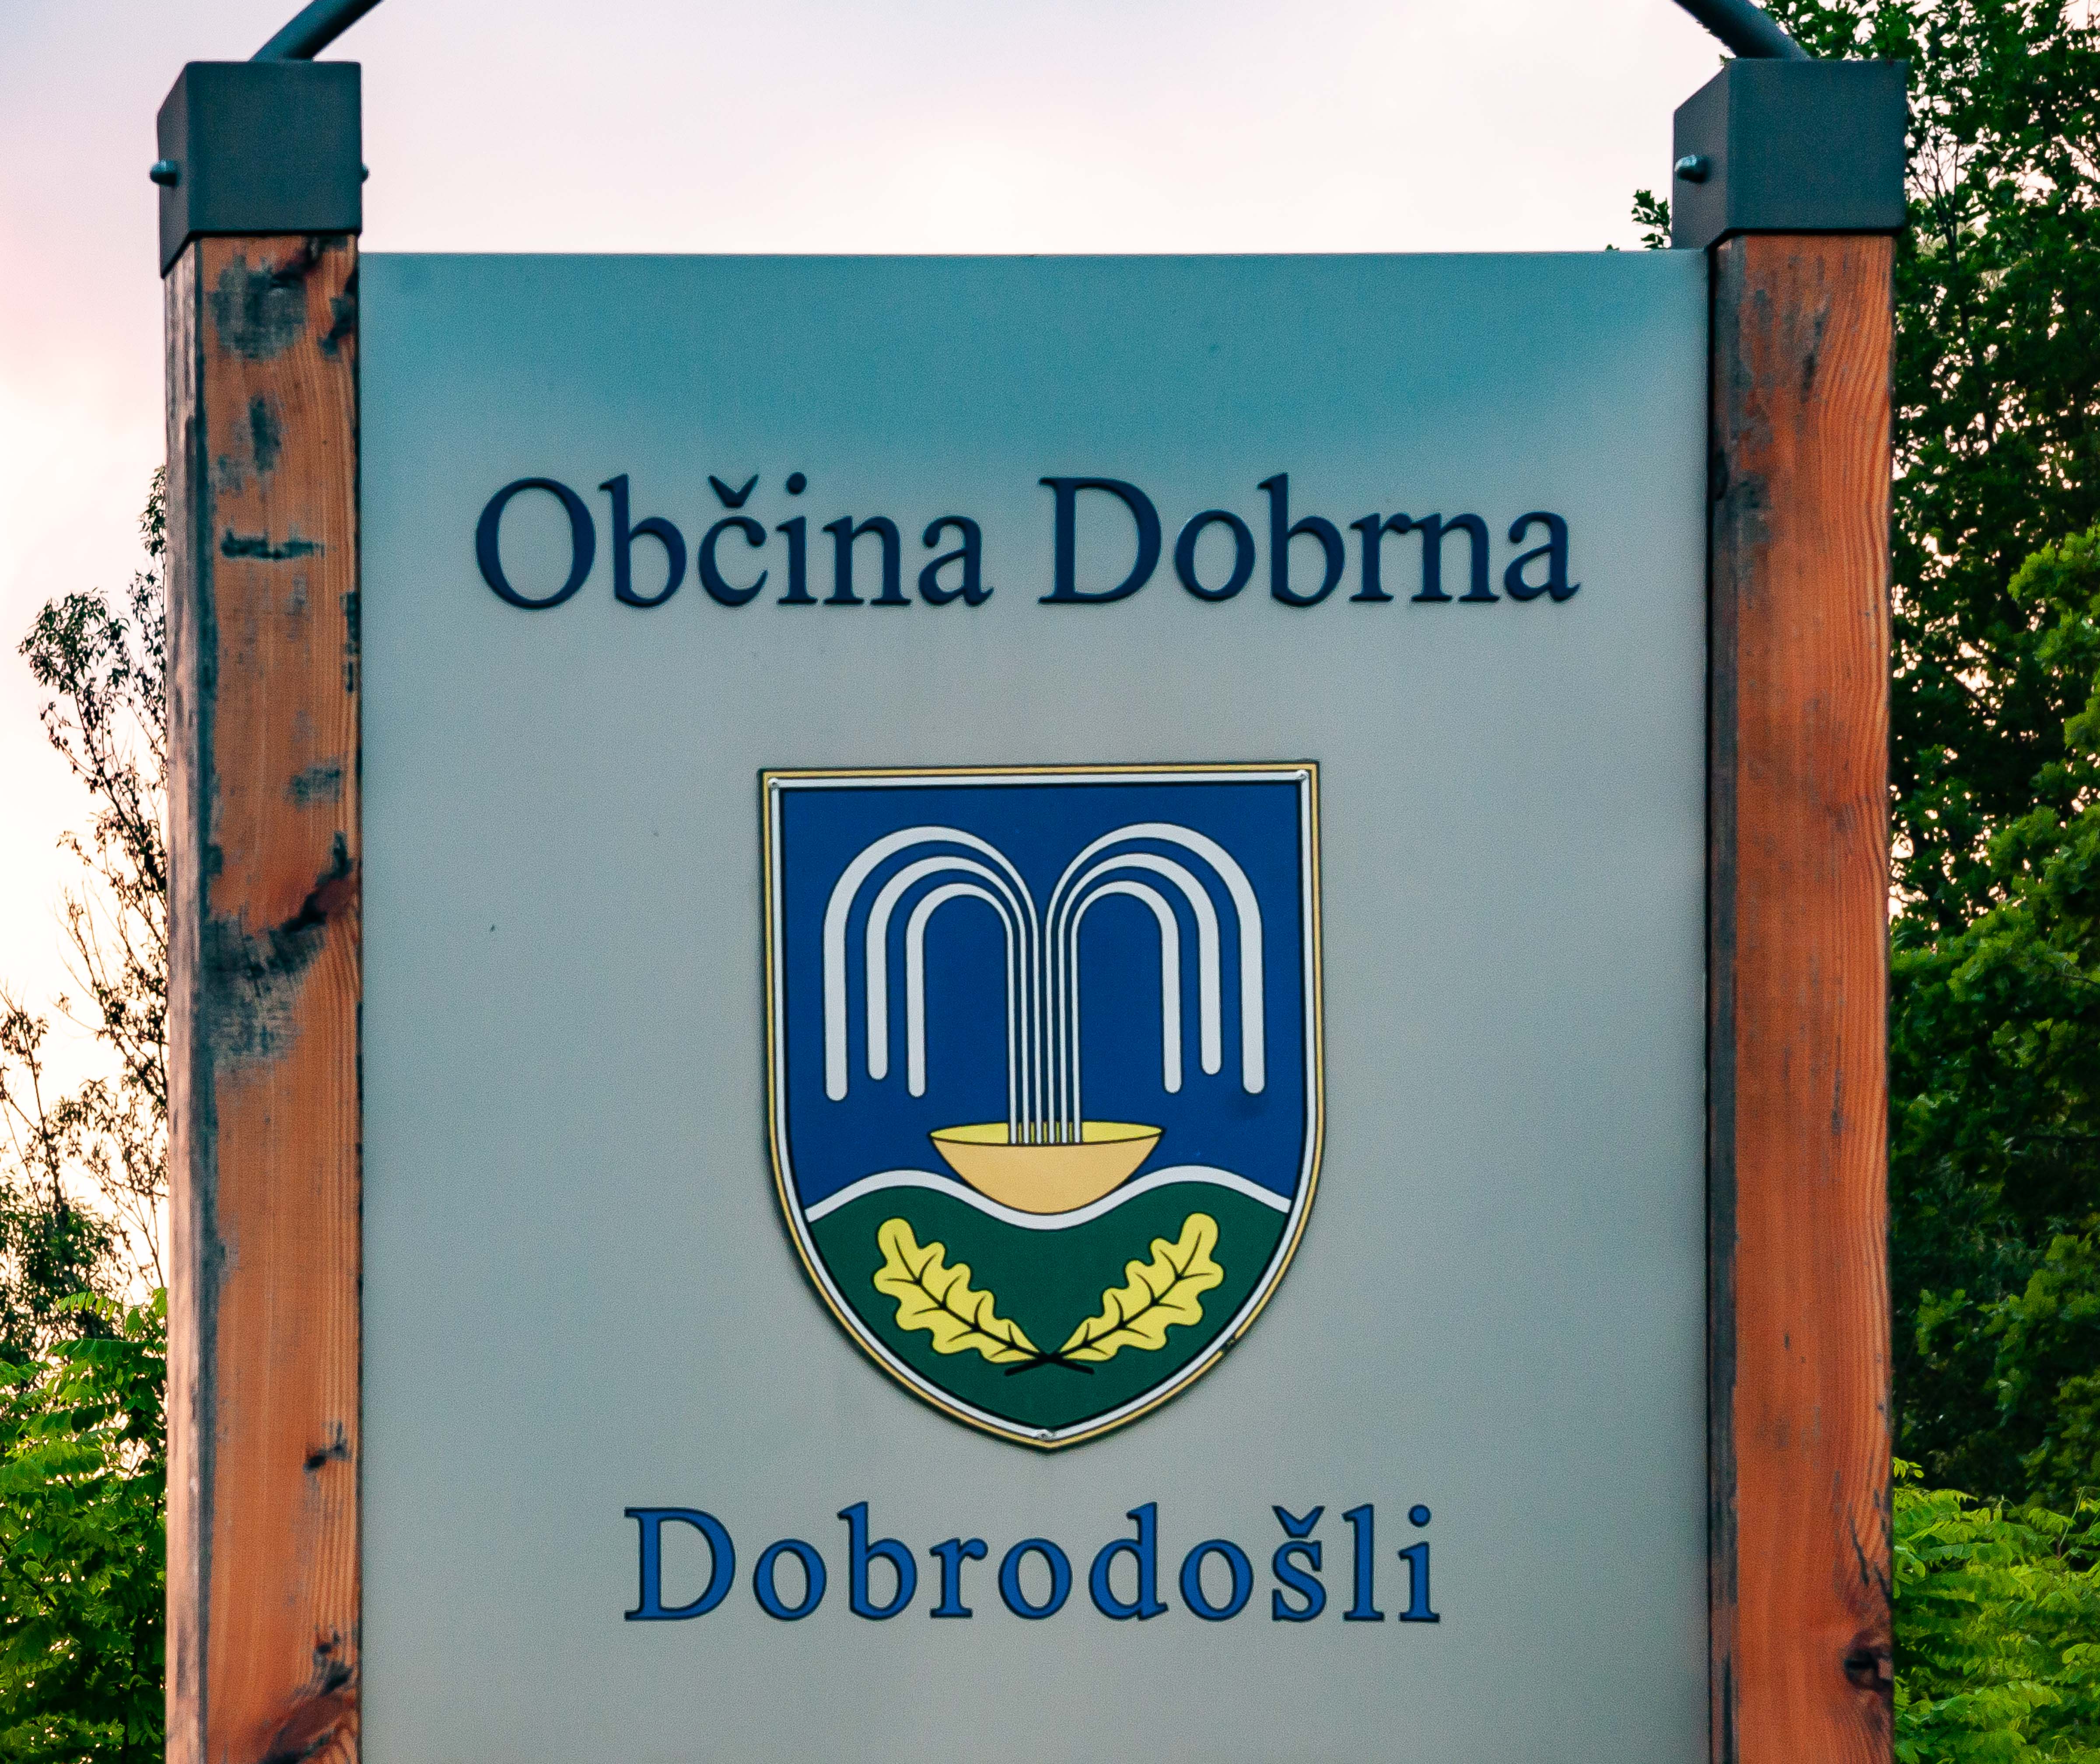 Slovenia, Dobrna Prov, Dobrodosli Obcina Dobrna, 2006, IMG 8062